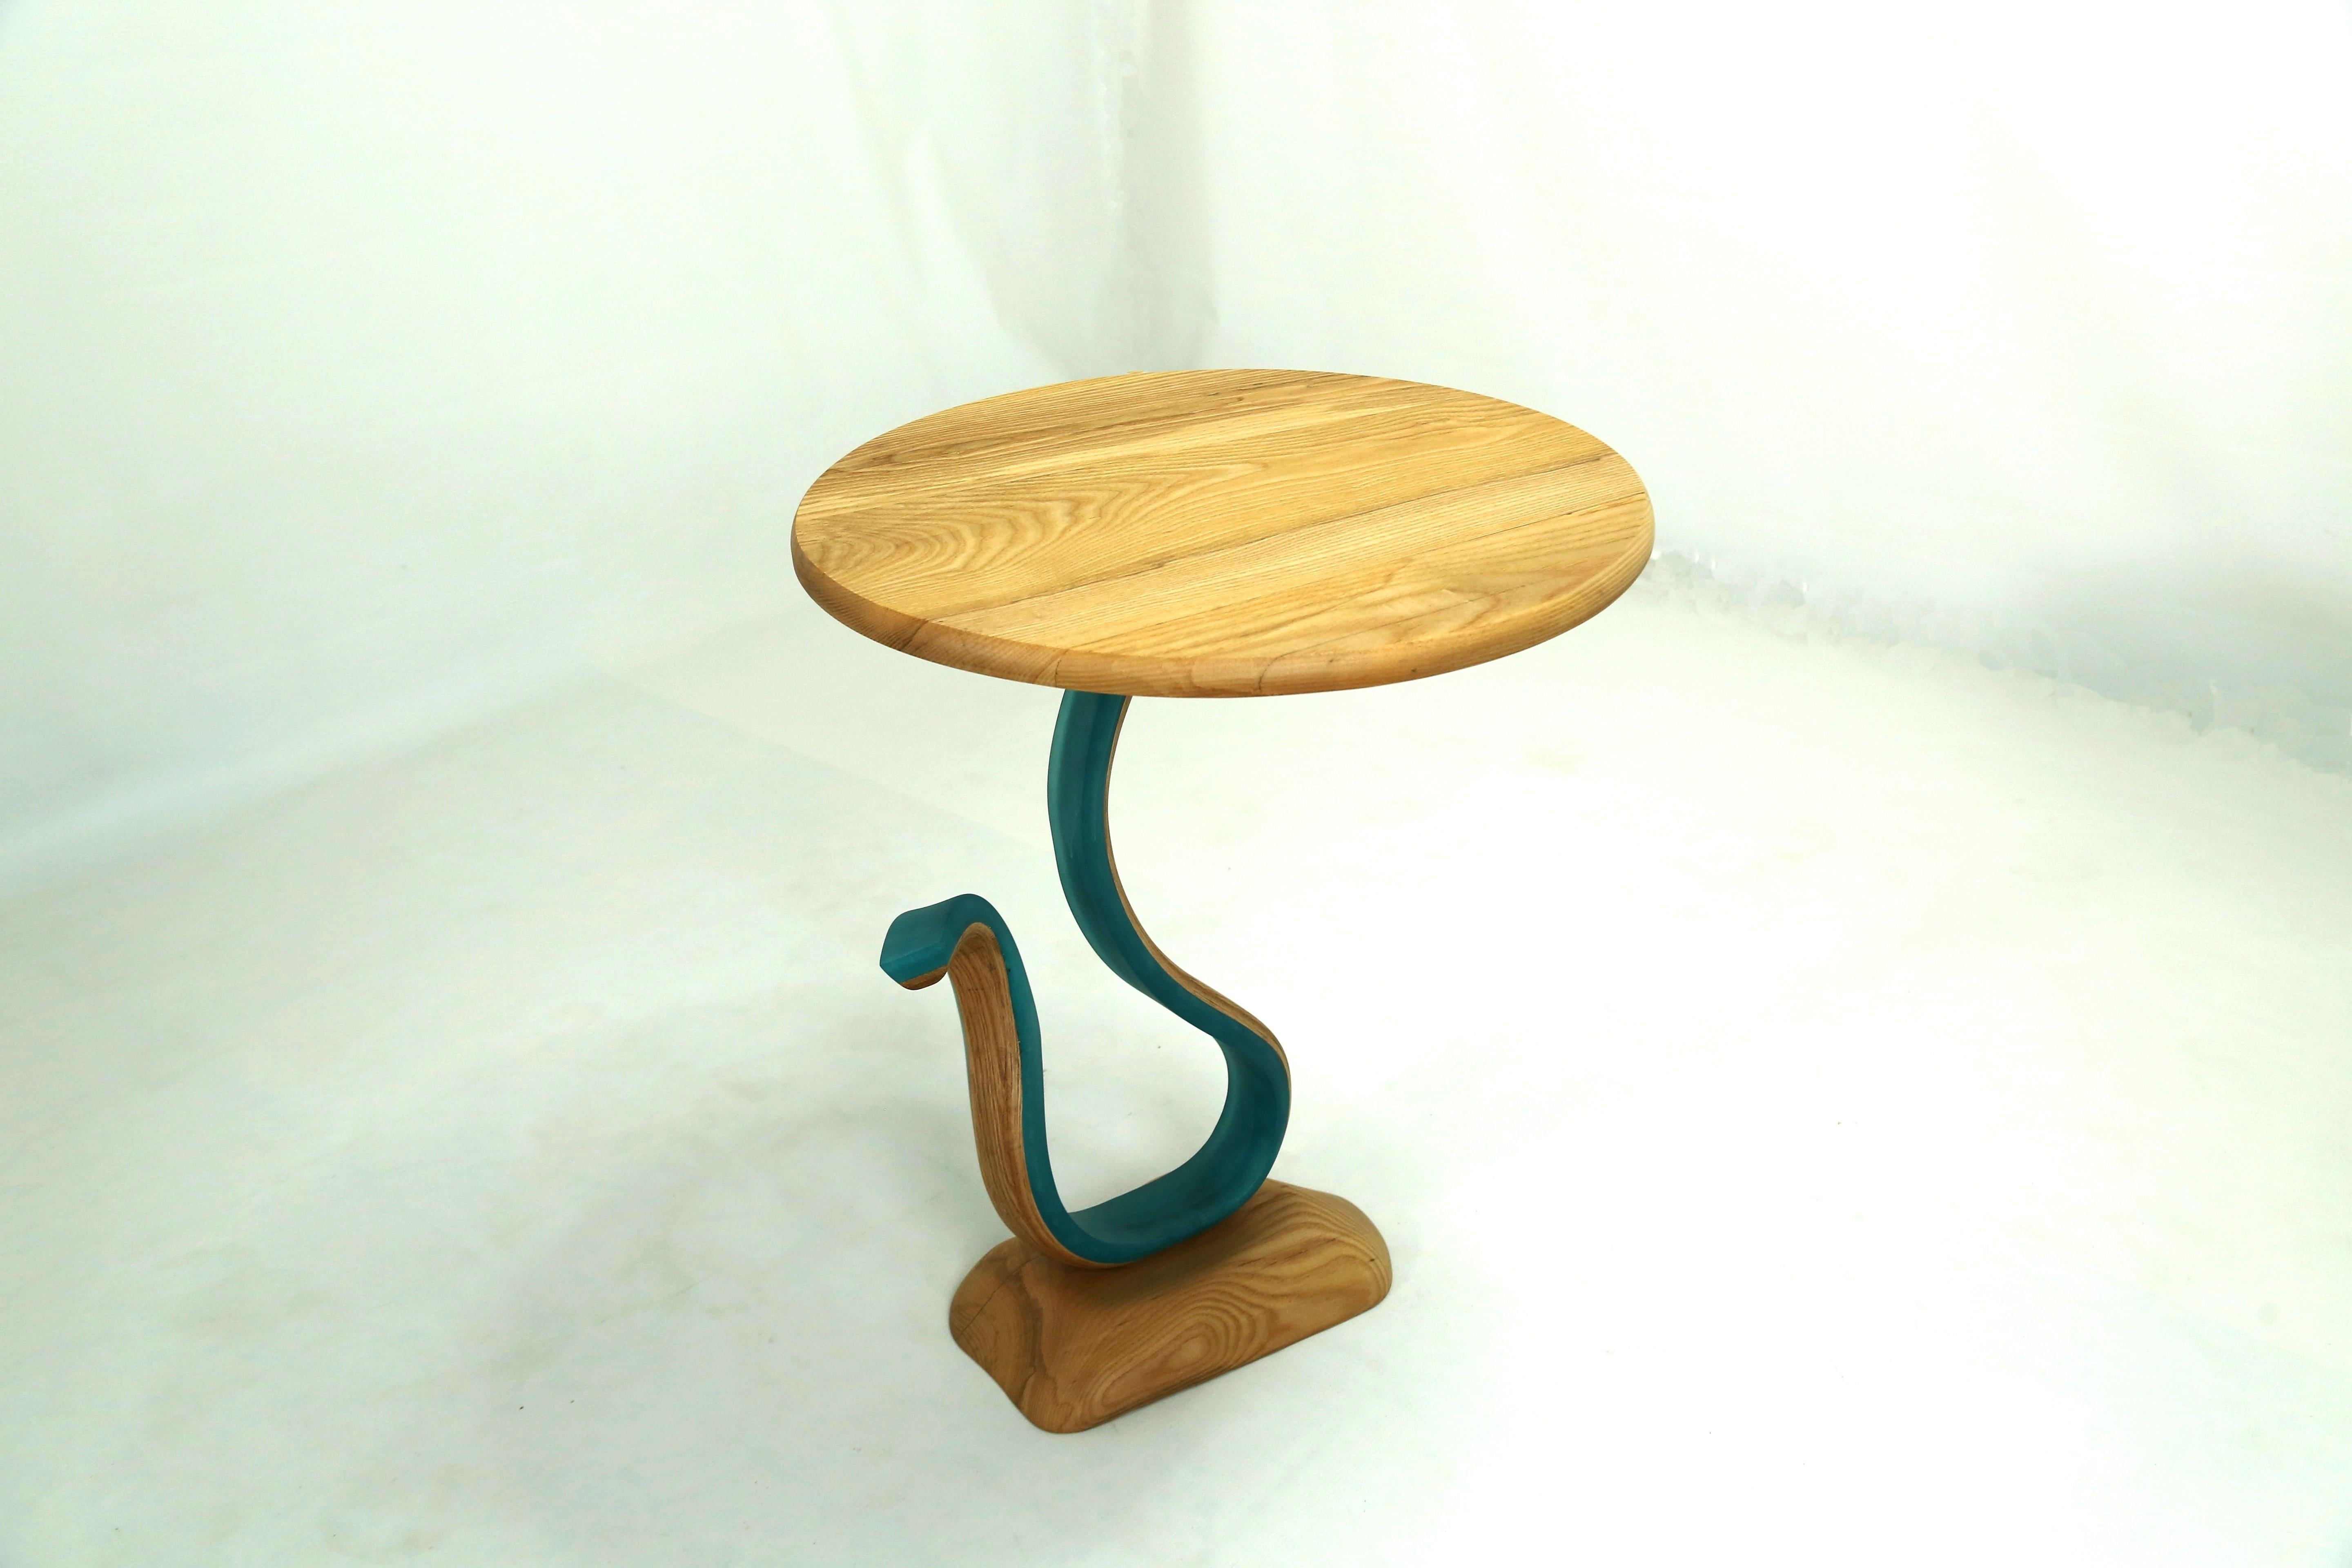 La Sterope Table est une table d'appoint dotée d'un plateau circulaire en frêne et d'une base sculptée de forme libre. Le corps de la pièce est constitué de résine fusionnée avec des bandes de bois de frêne qui, ensemble, se tordent et tournent,